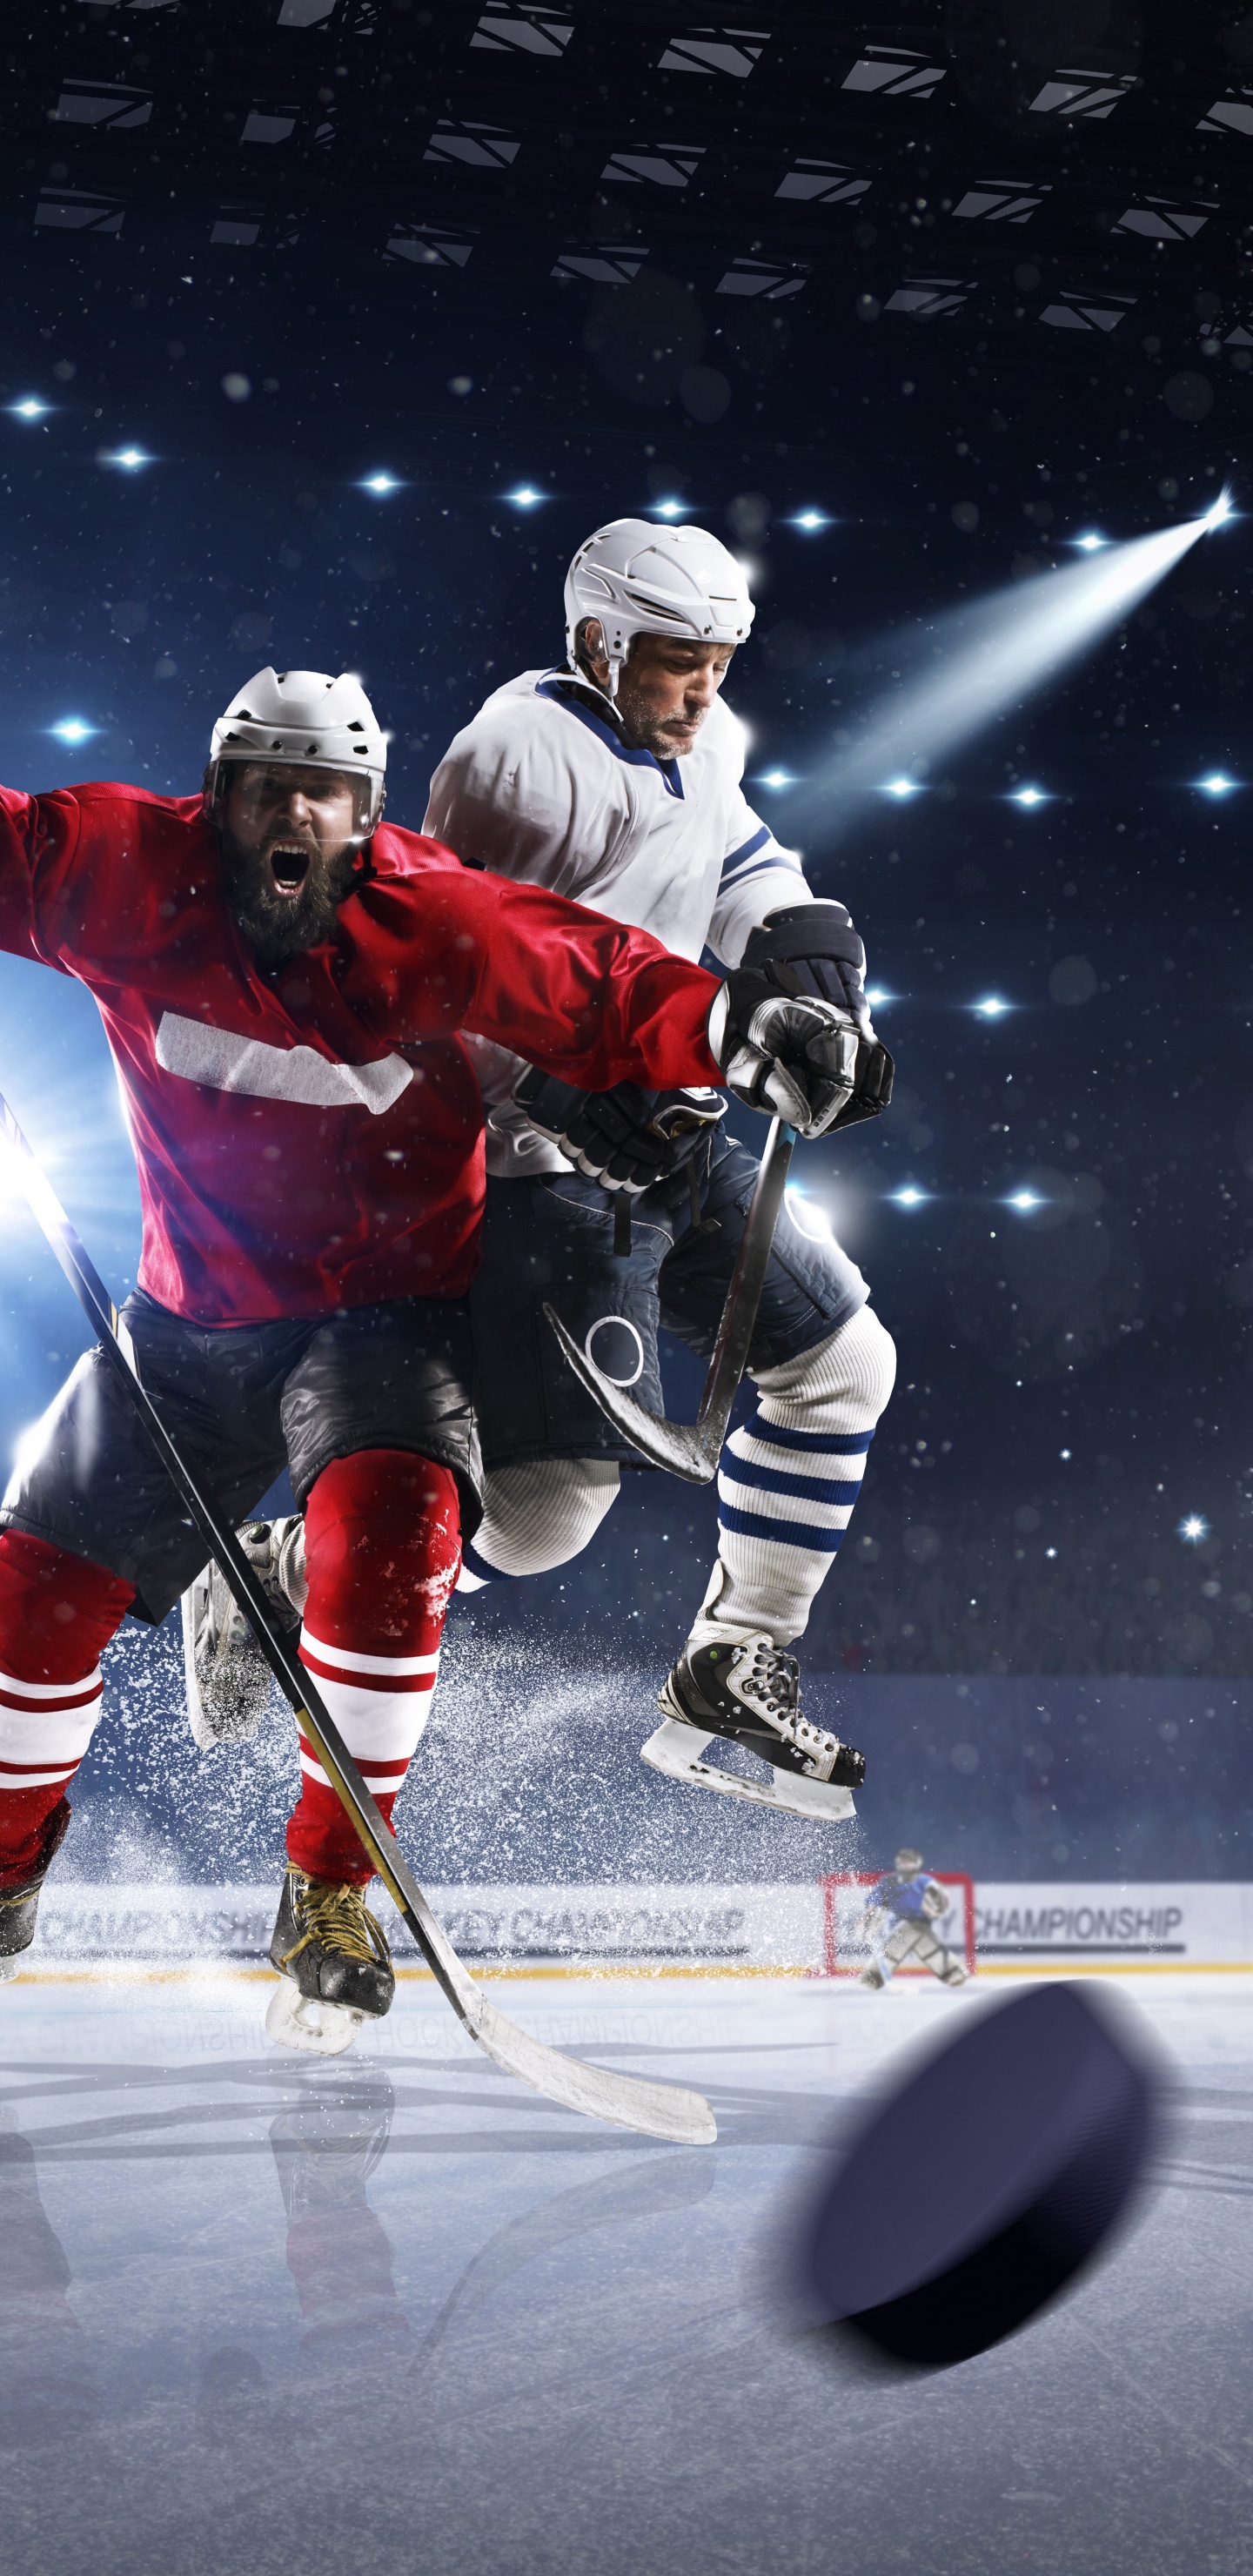 Eishockeyspieler Auf Dem Eishockeyfeld. Wallpaper in 1440x2960 Resolution